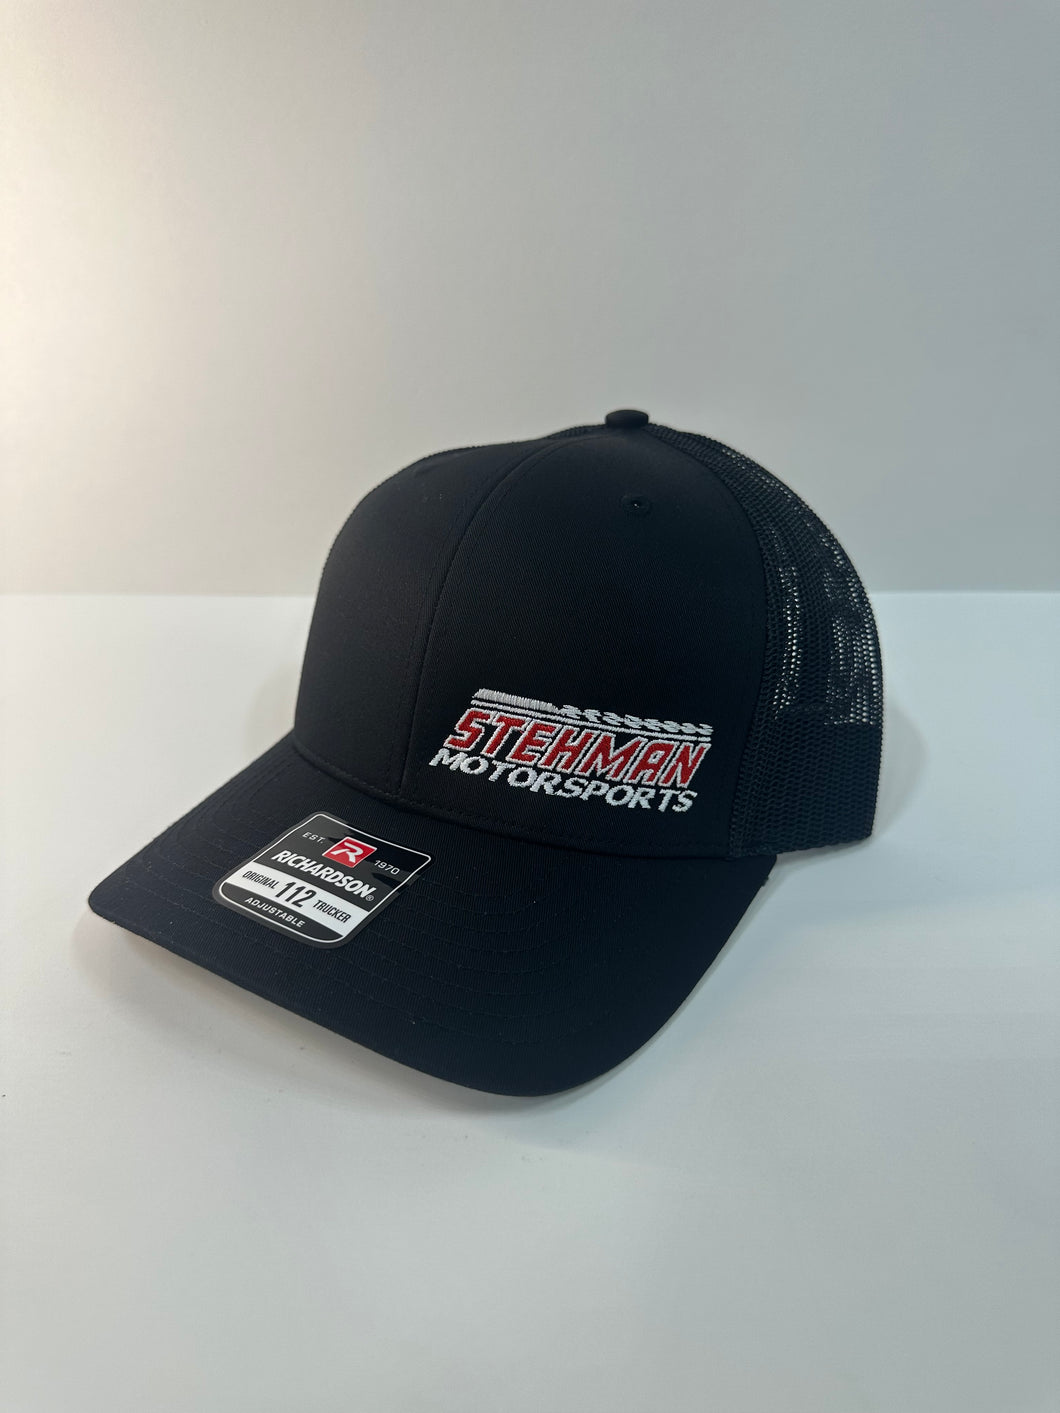 Stehman Motorsports SnapBack Hat